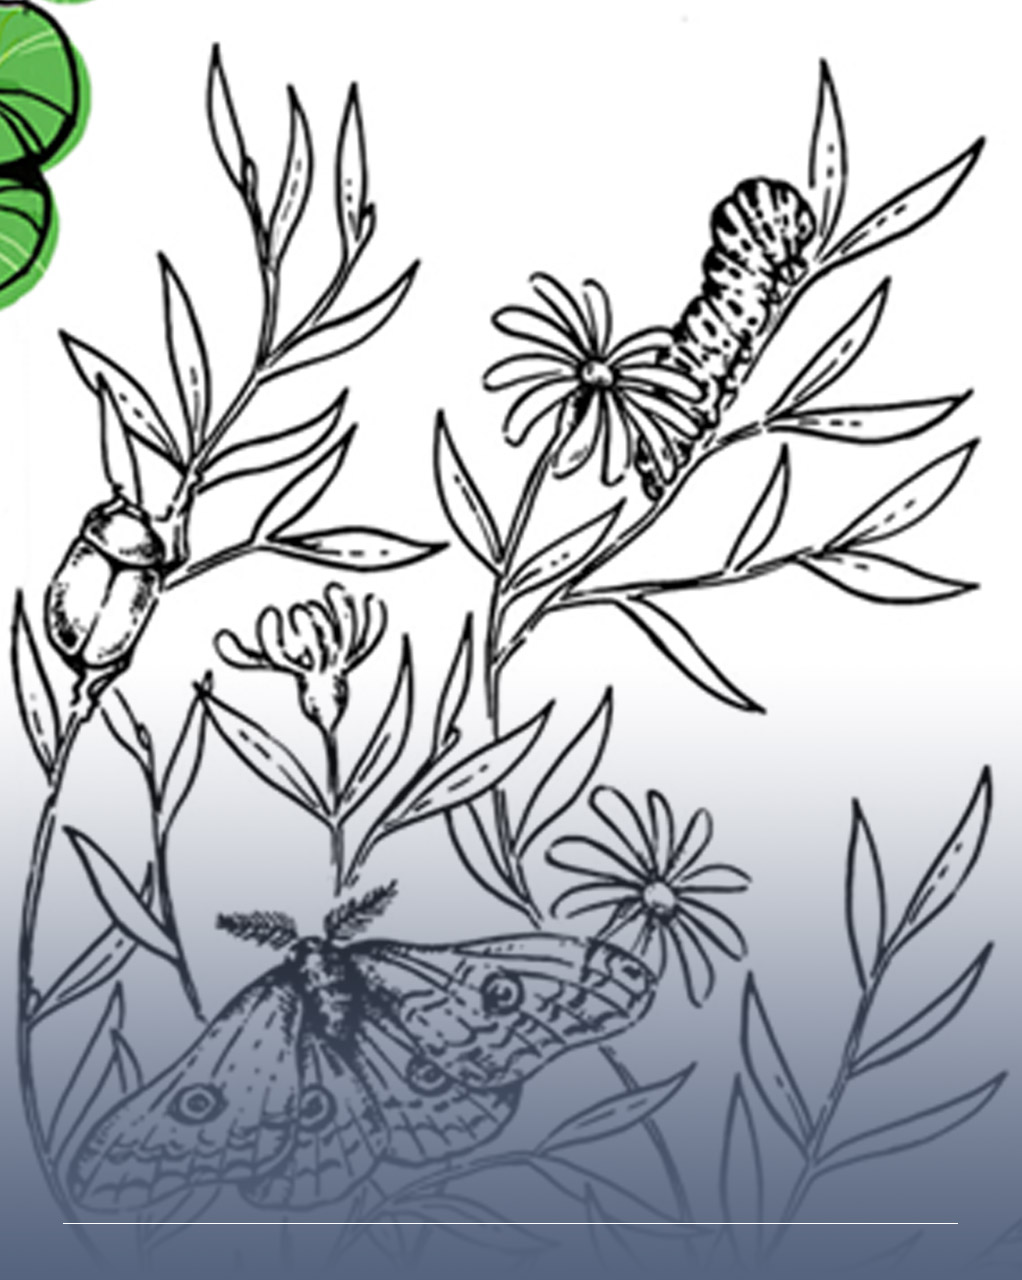 Disegno in bianco e nero di piante e fiori